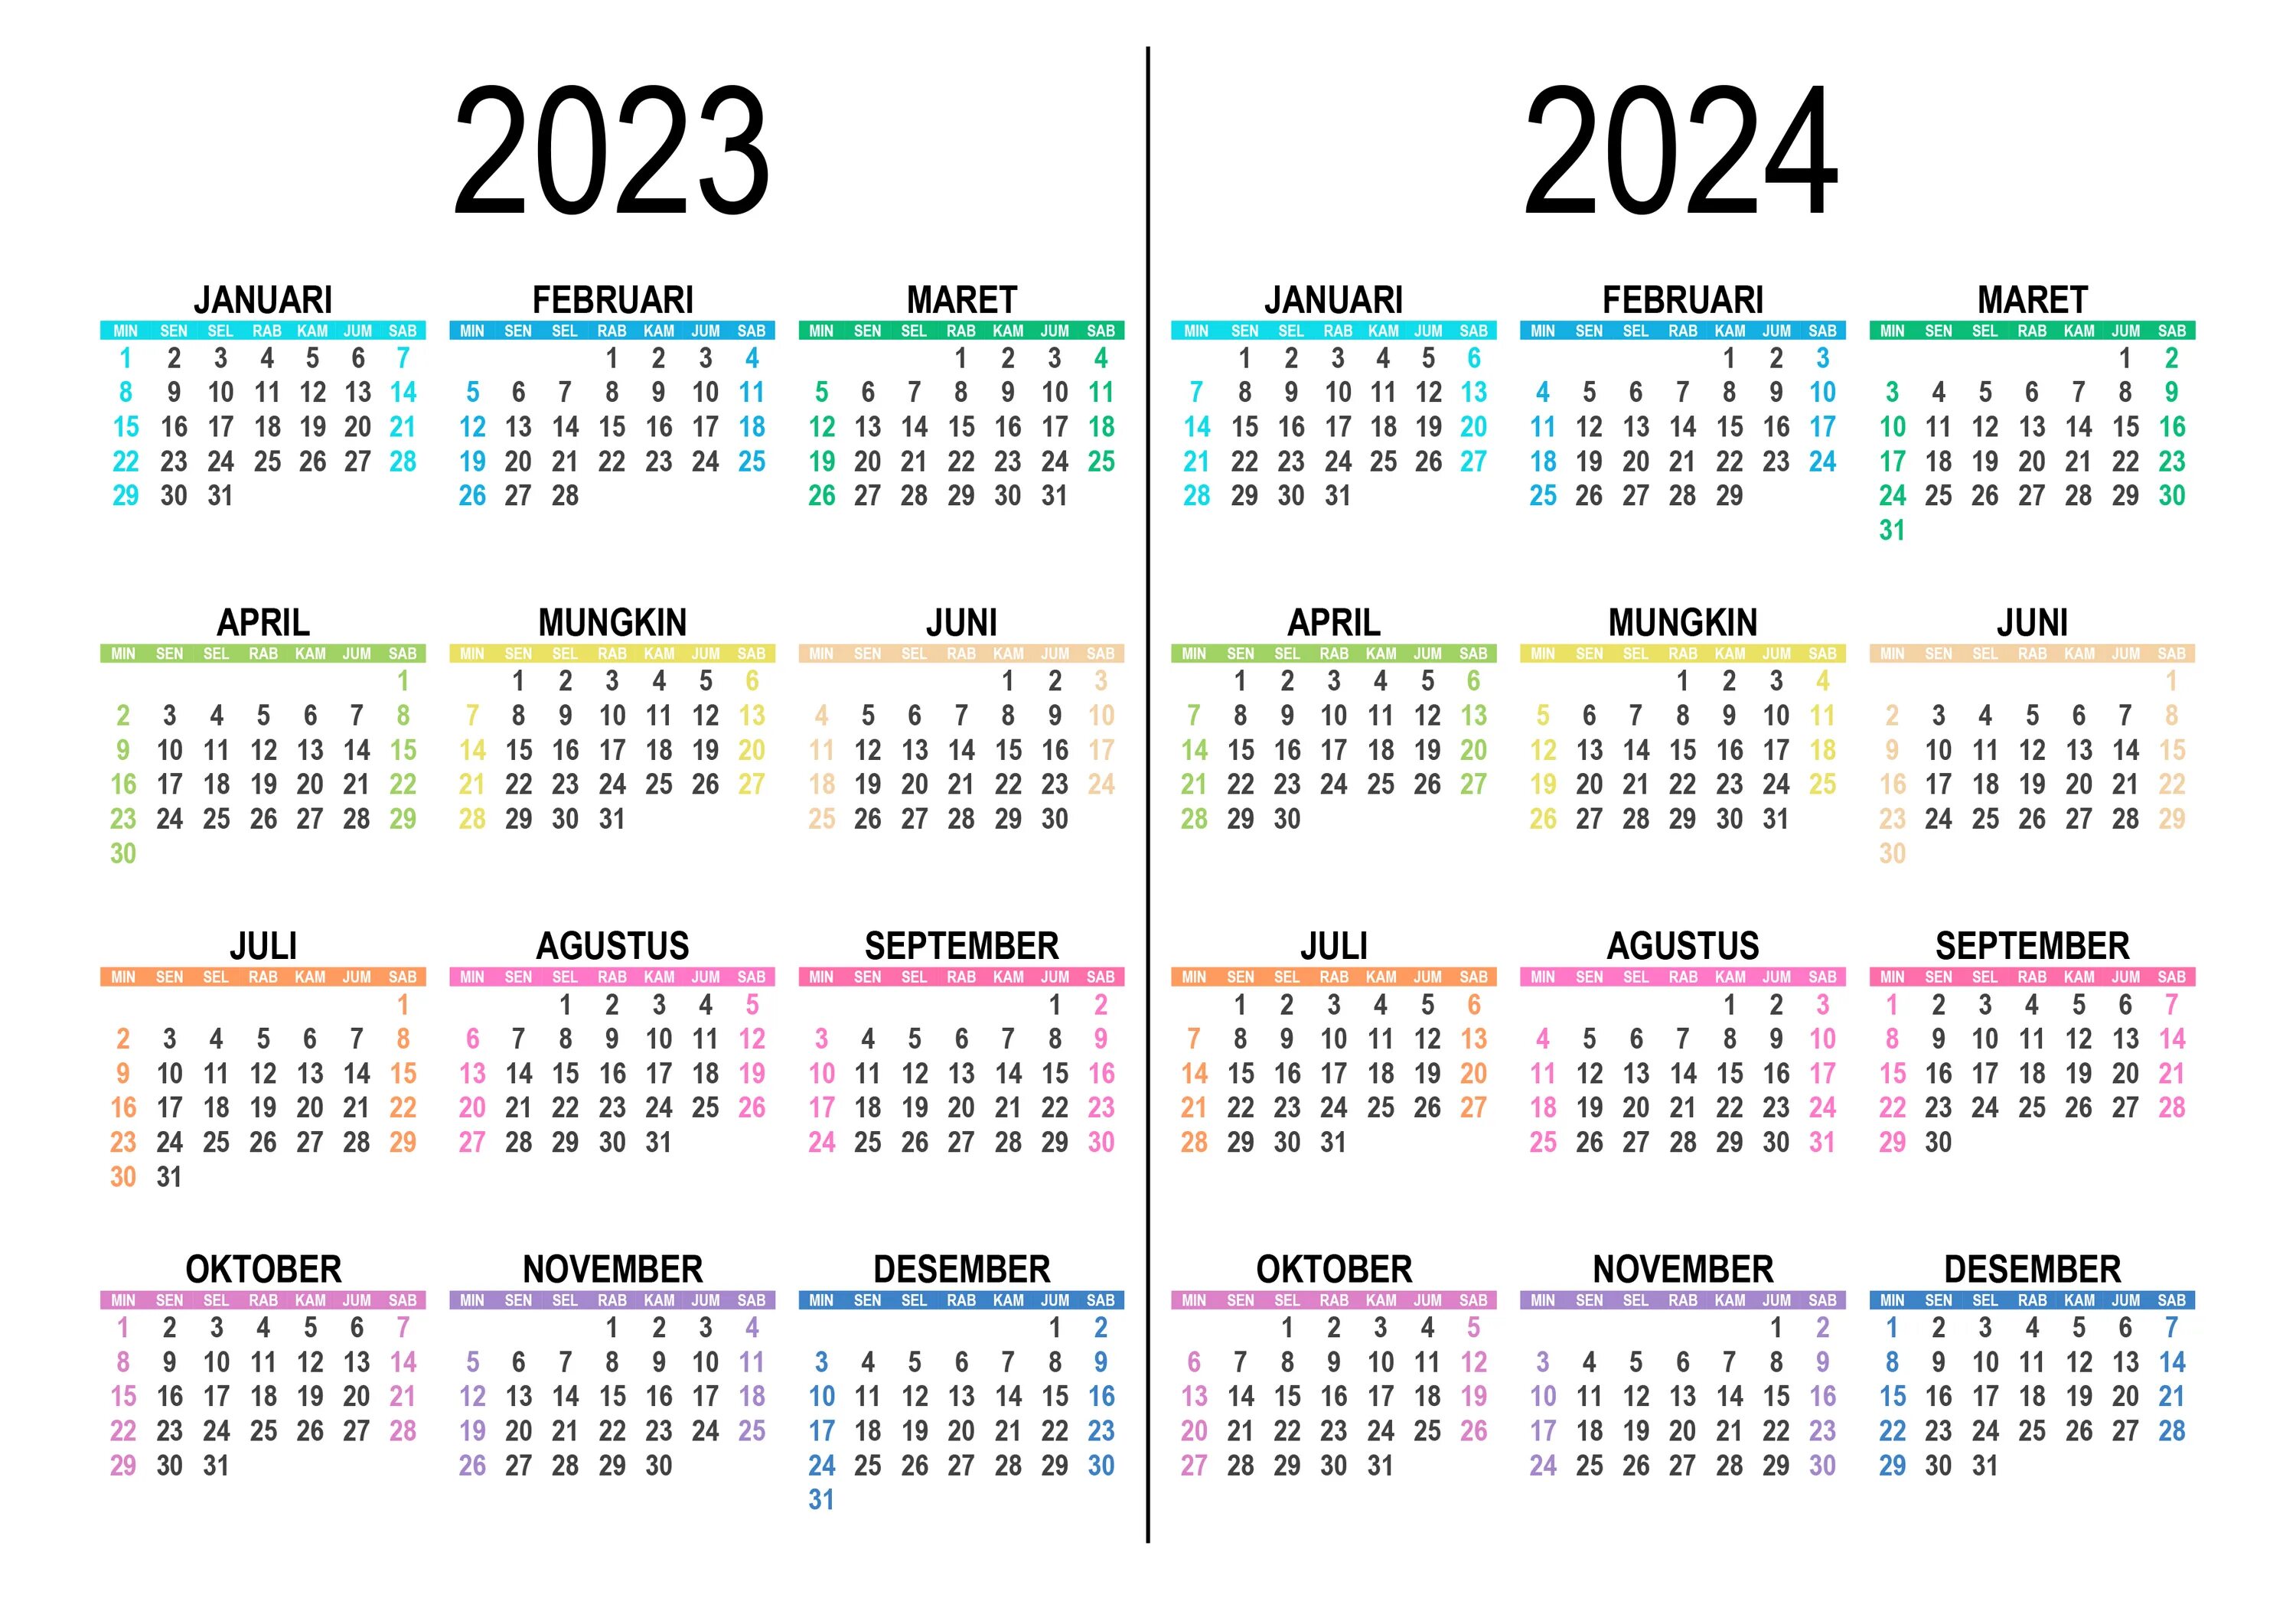 Даты календаря на 2023 год